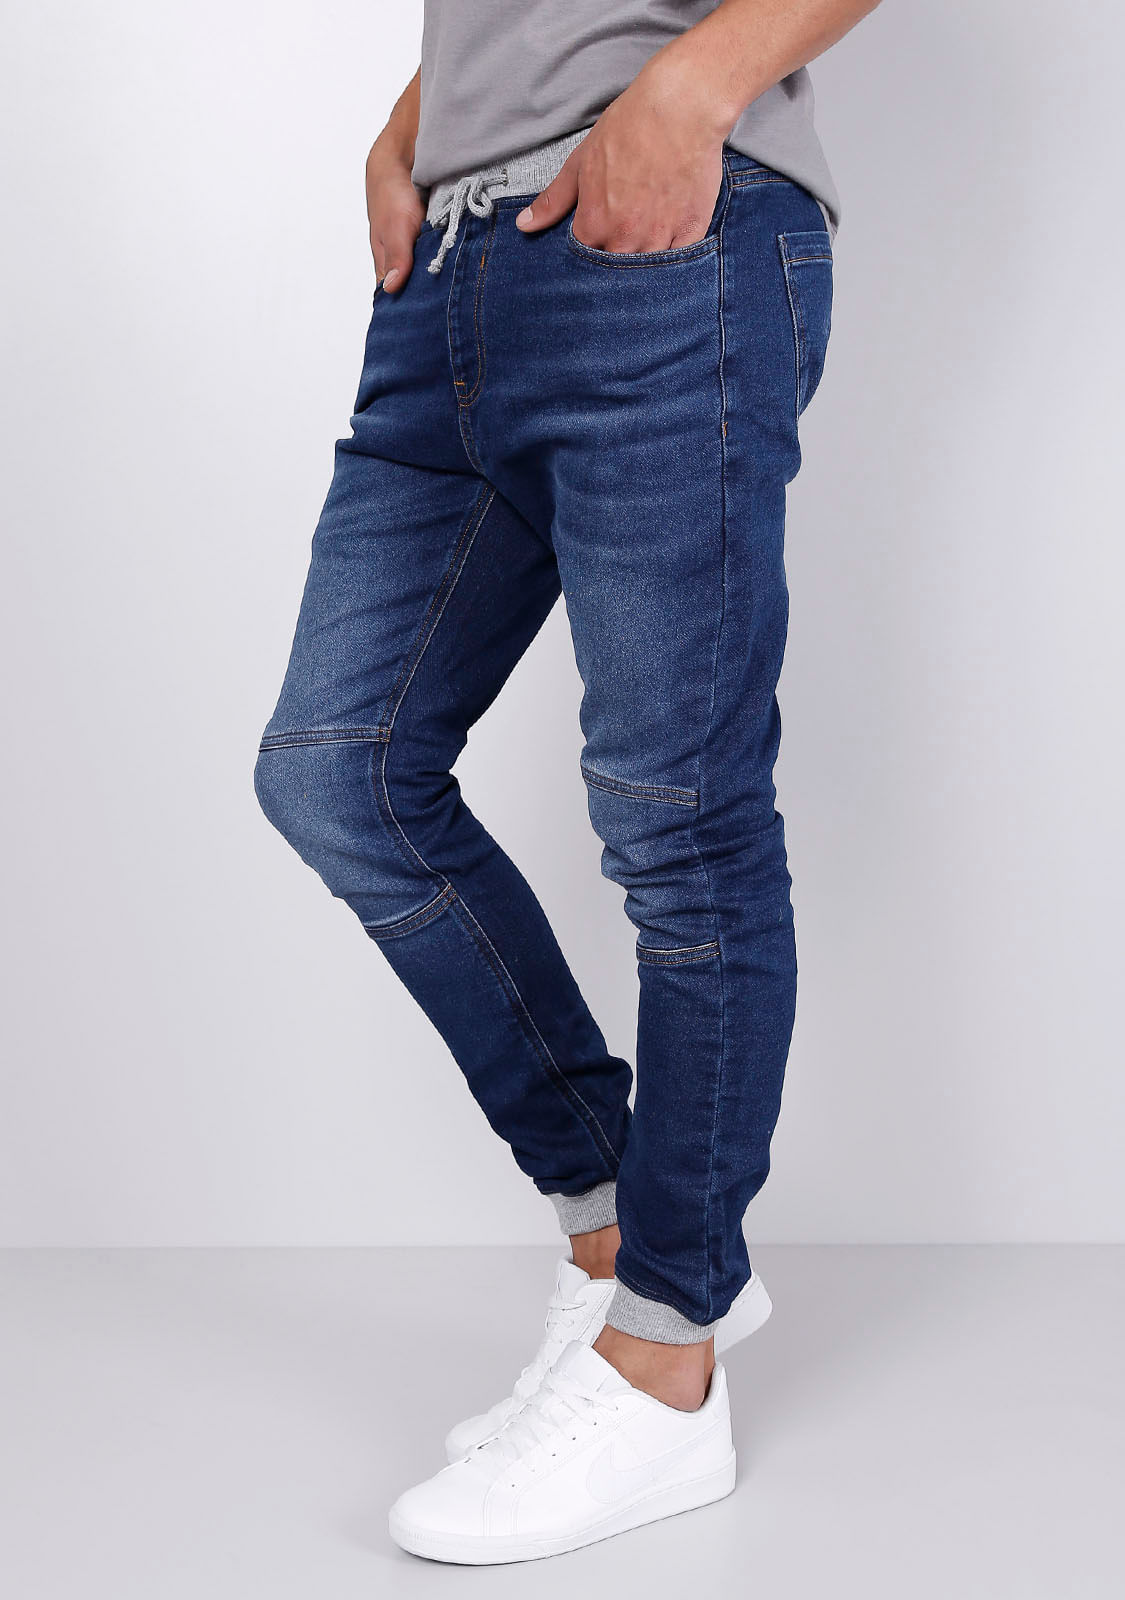 renner calça jeans masculina